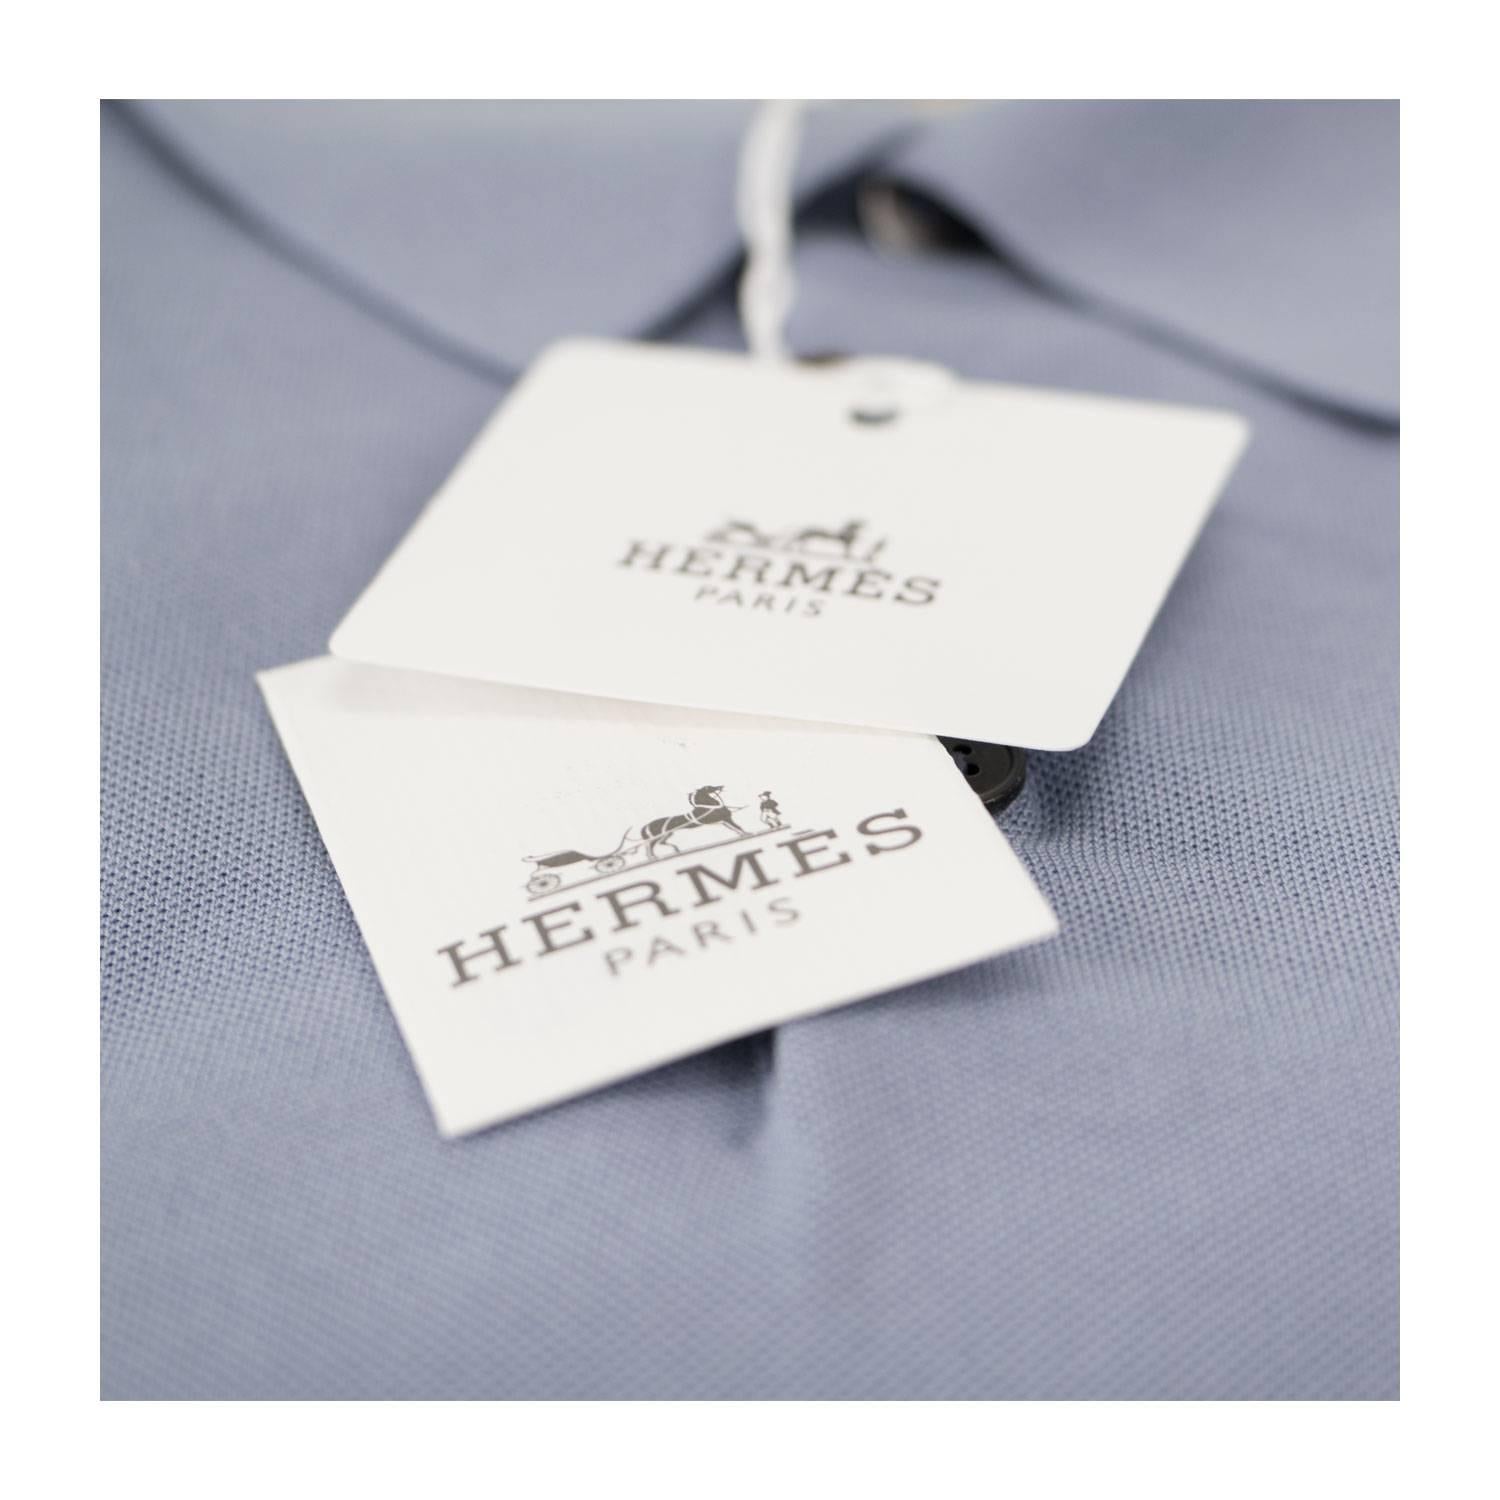 Hermes Polo Boutonne Pique Cotton Size M Color Bleu Ciel 2016  For Sale 1